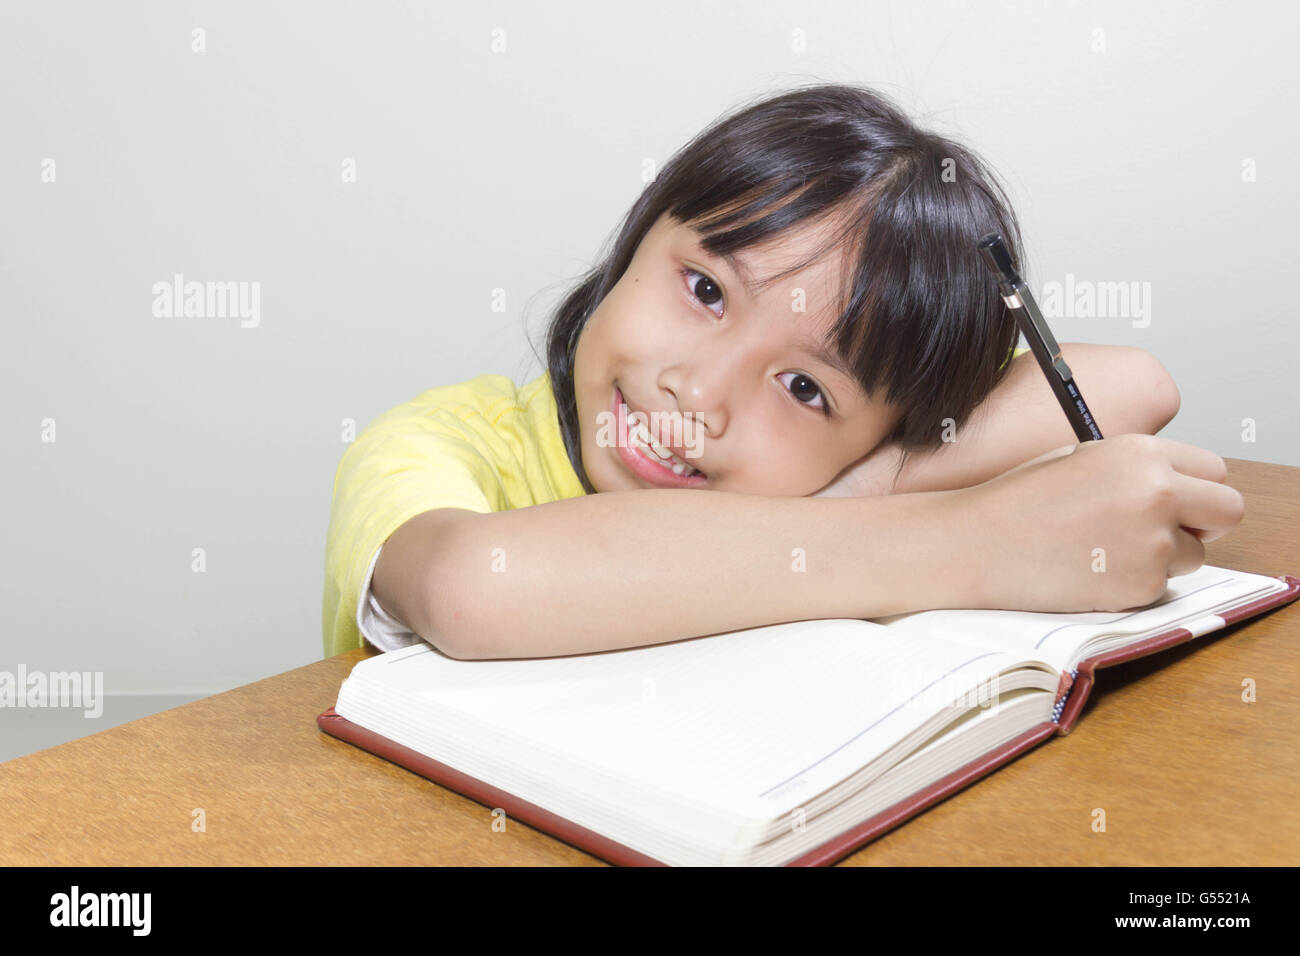 Asiatische Mädchen Kind glücklich arbeiten im Raum sitzen mit ihrem Stift in der Hand Schreiben von Notizen auf Buch White papers Stockfoto